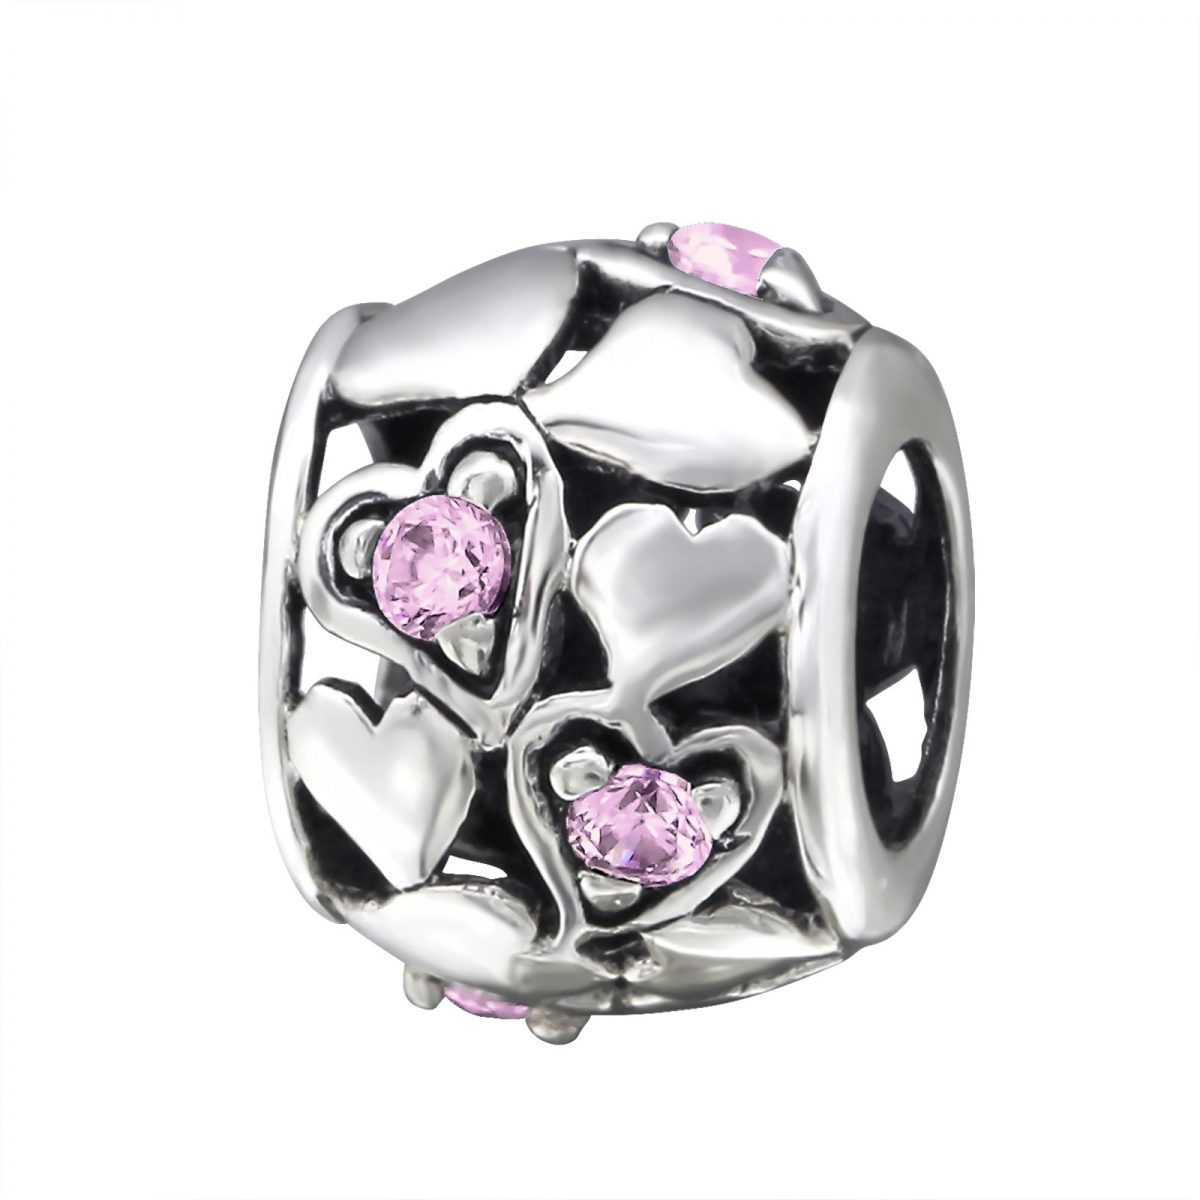 Hartjes bead pink roze met 5 zirconia  Bedel  Zilverana  geschikt voor Biagi , Pandora , Trollbeads armband  925 zilver